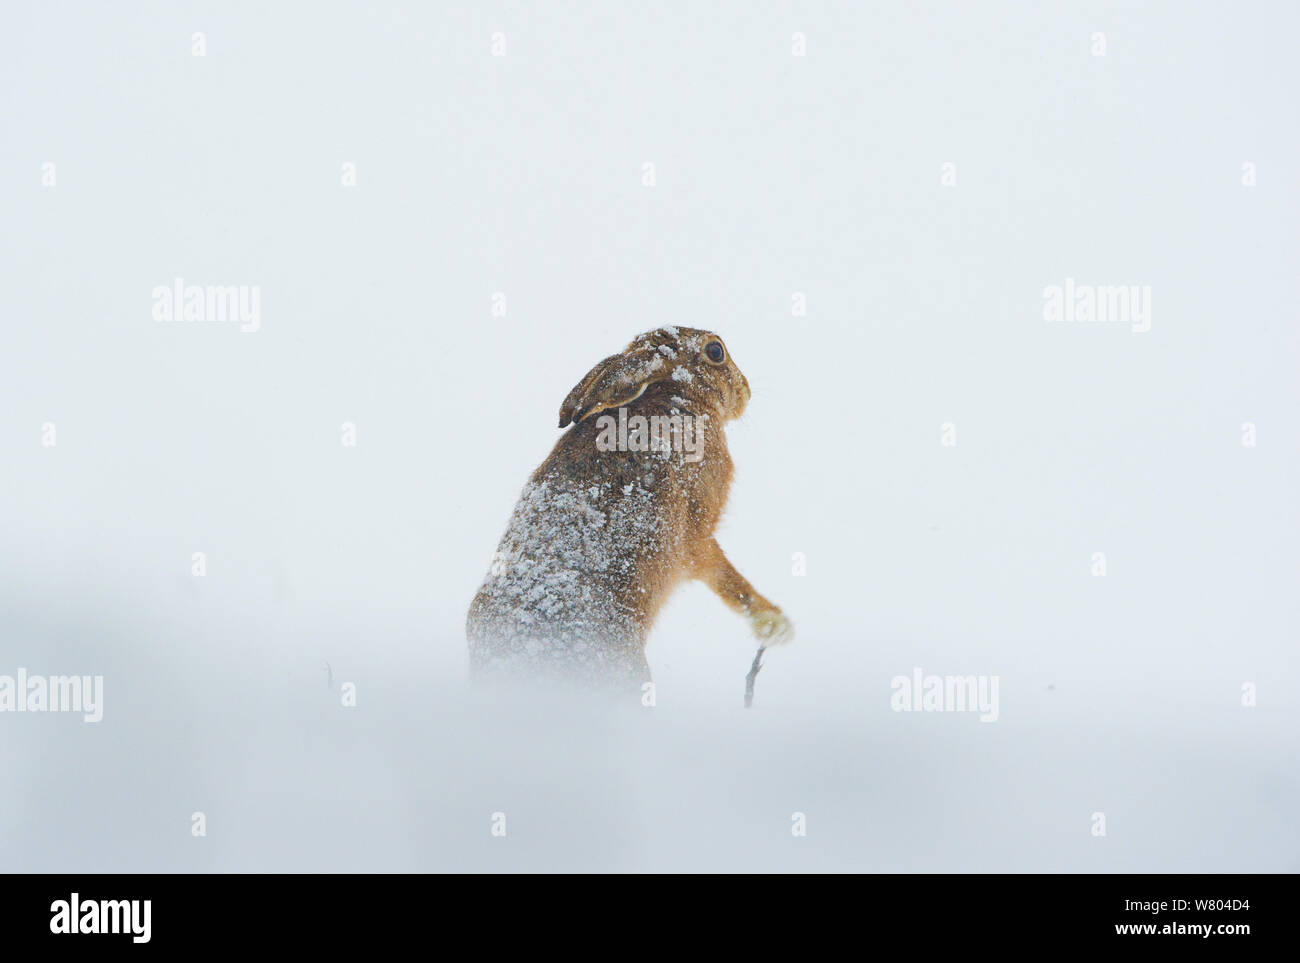 Lièvre brun (Lepus europaeus) adultes qui semble tenir un bâton de marche tout en agitant les pattes, Derbyshire, Royaume-Uni. Janvier. Banque D'Images